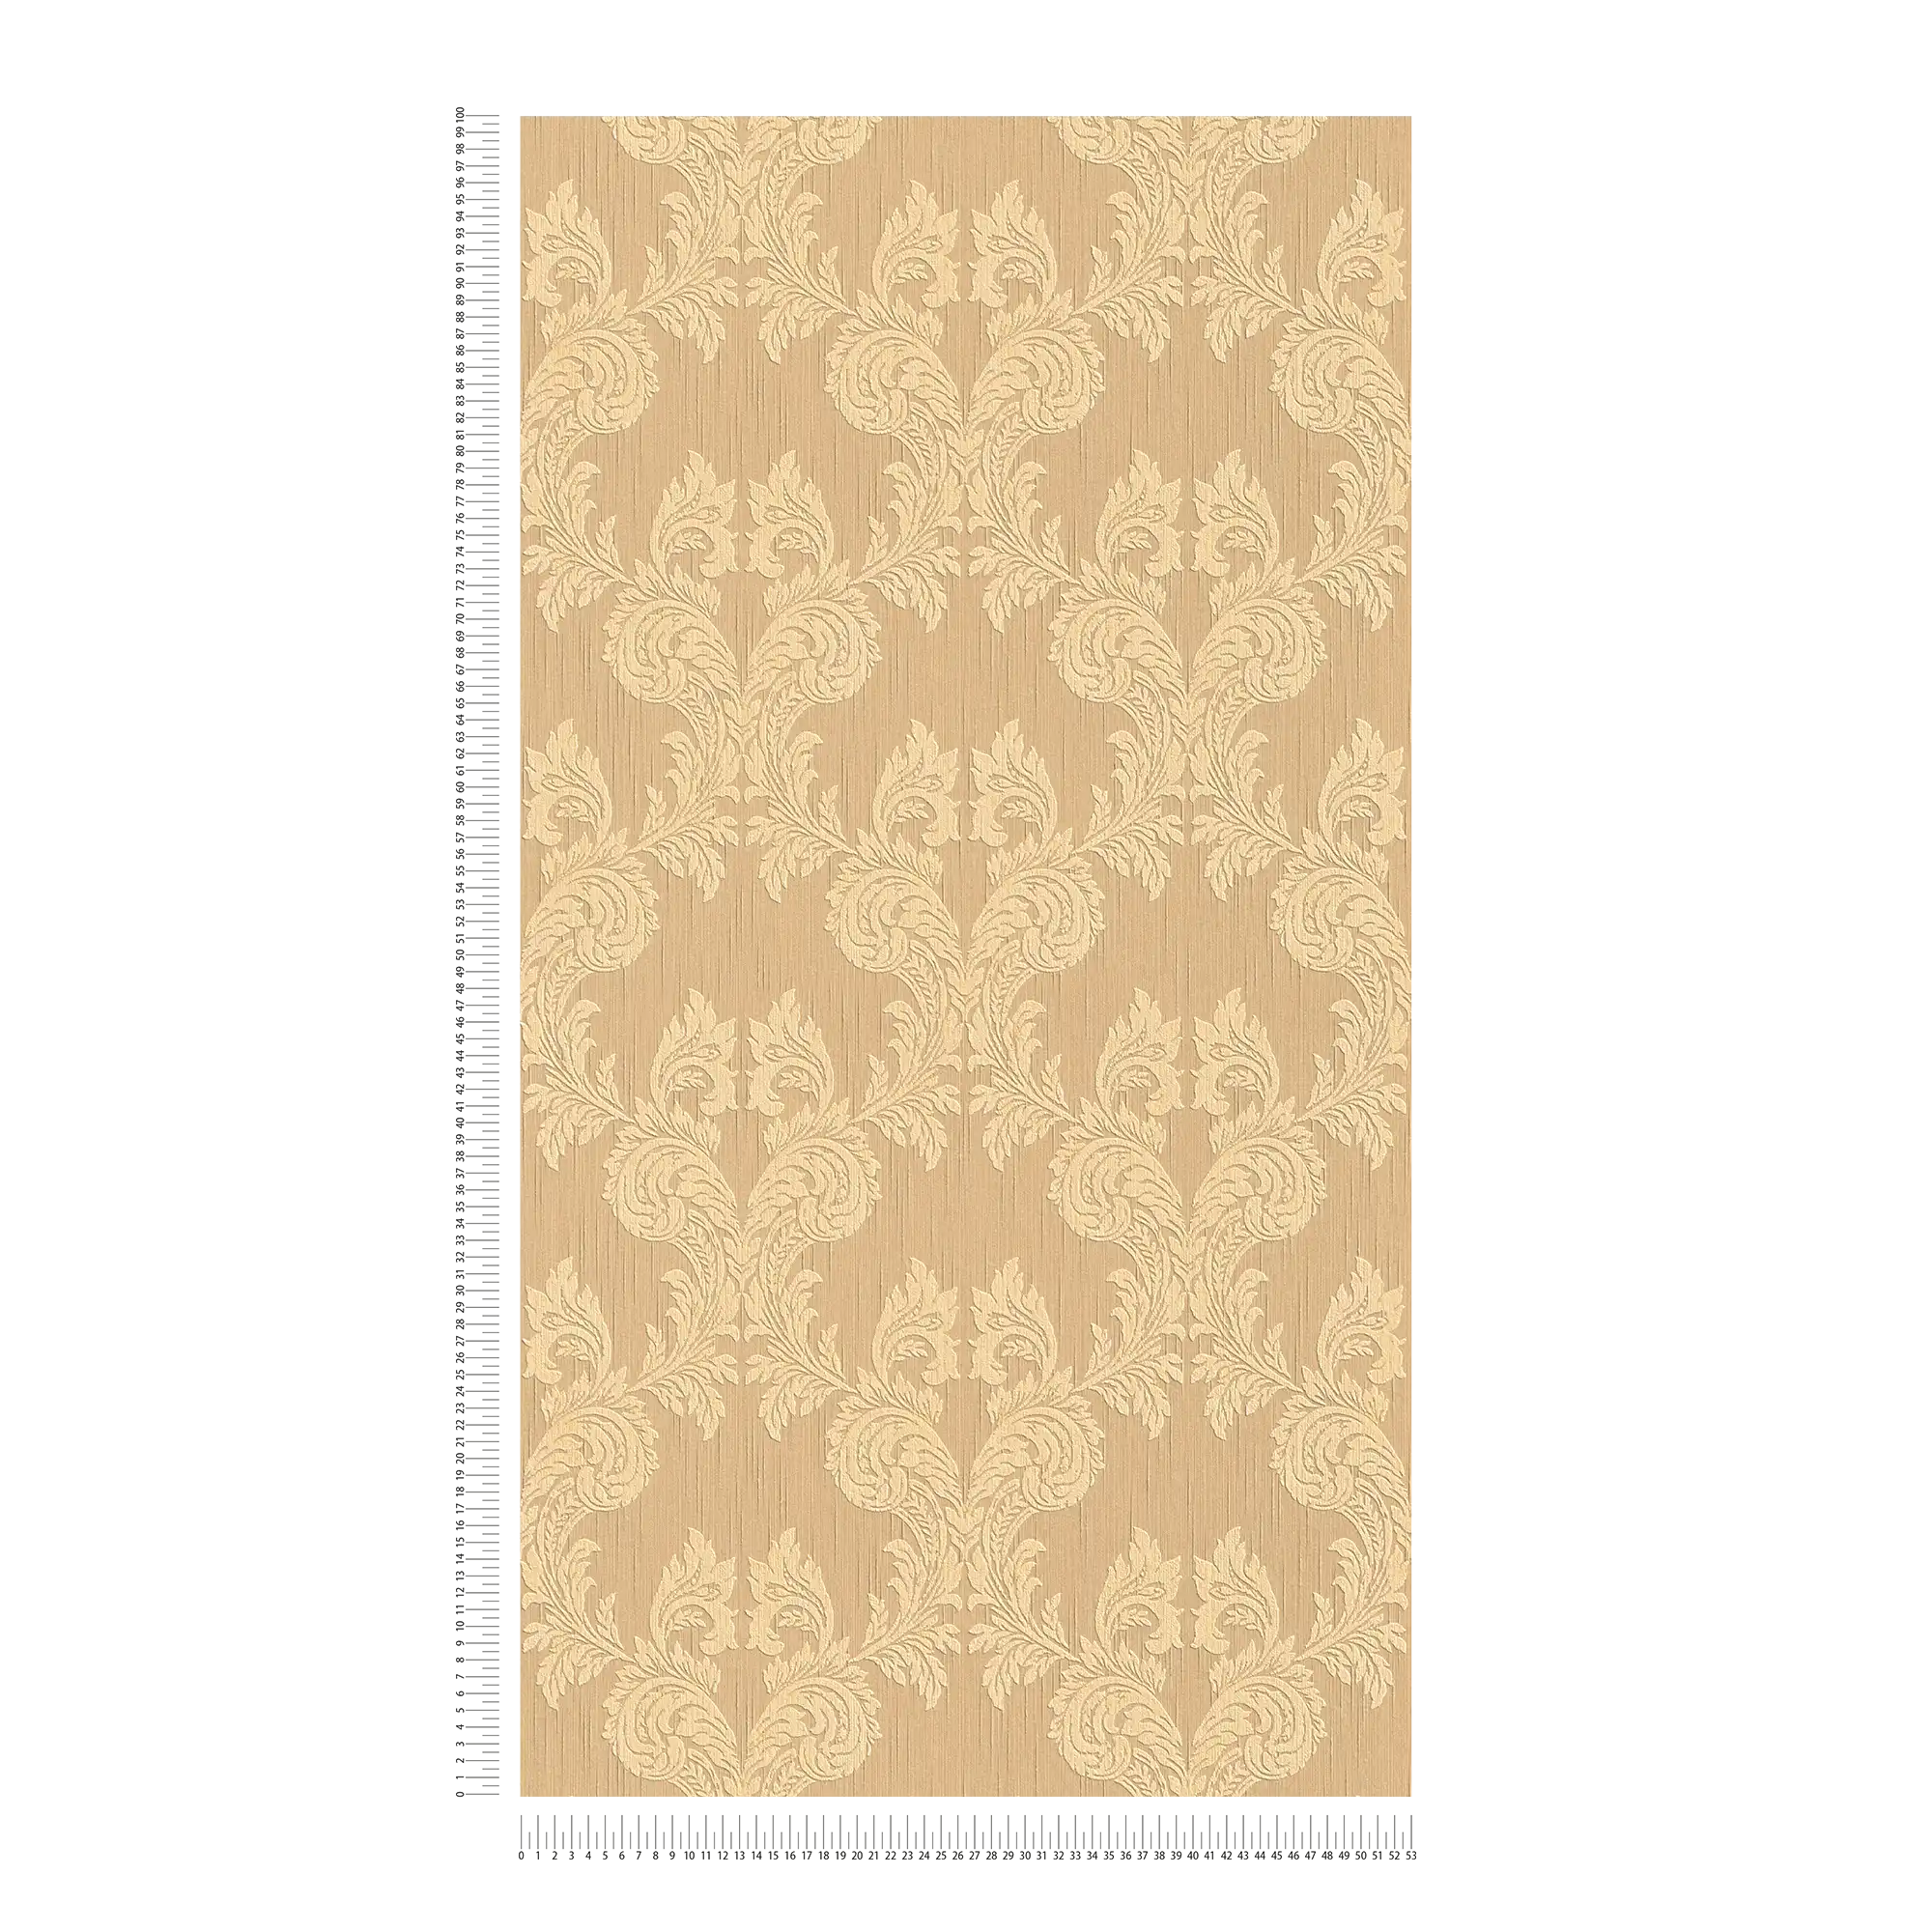             carta da parati con struttura tessile e motivi ornamentali in stile classico - arancione
        